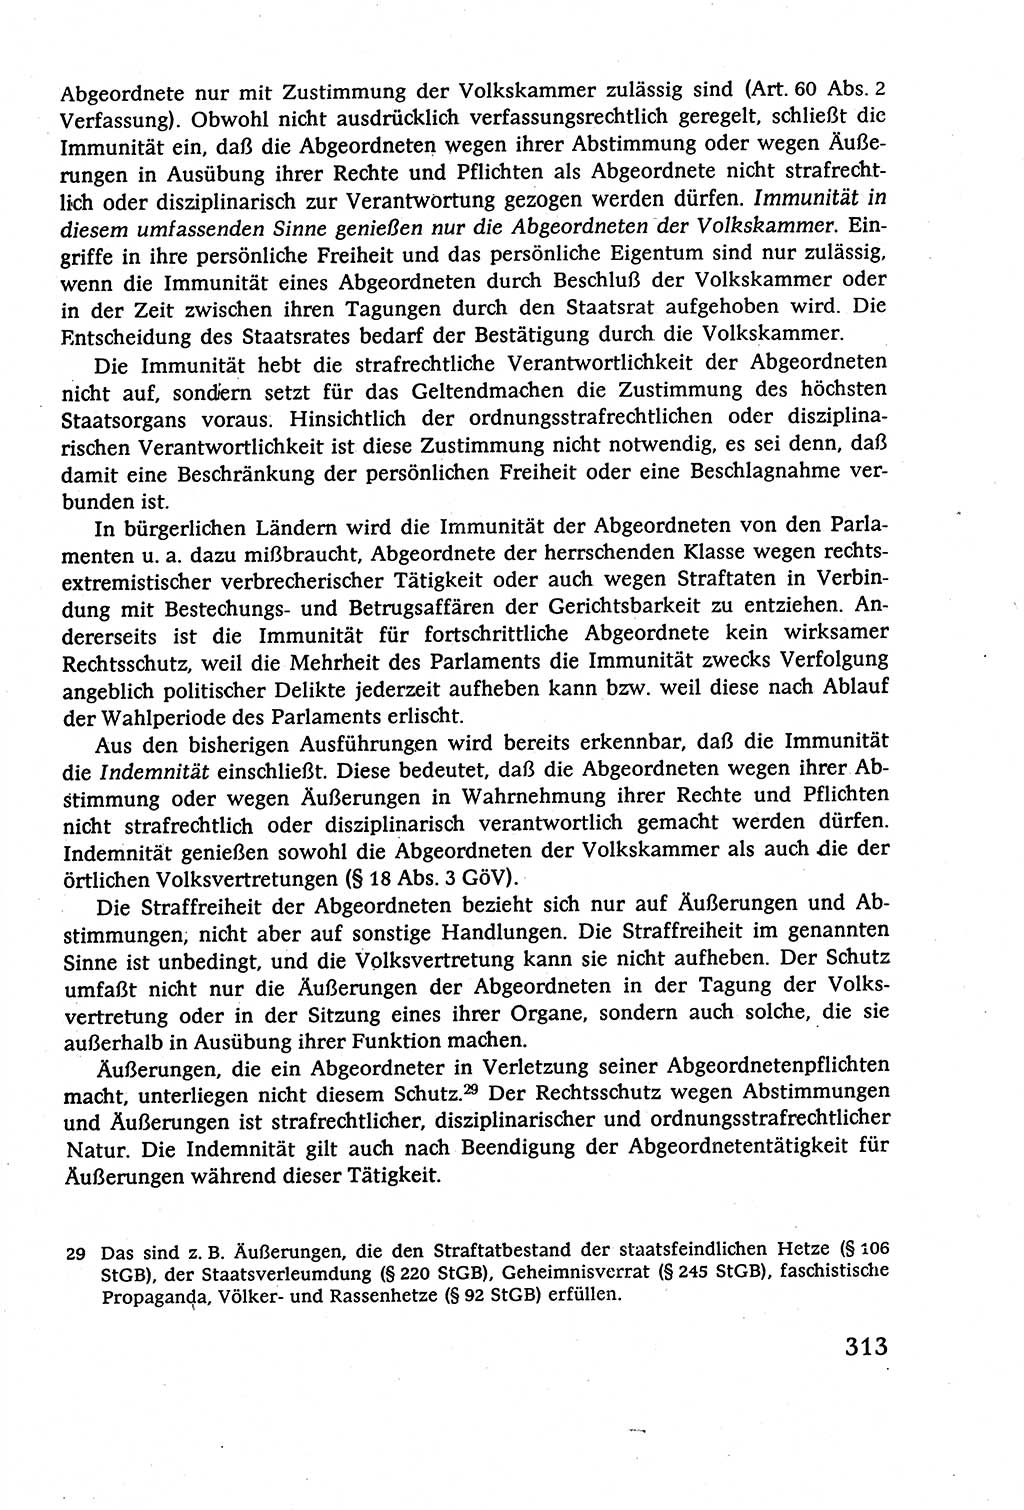 Staatsrecht der DDR (Deutsche Demokratische Republik), Lehrbuch 1977, Seite 313 (St.-R. DDR Lb. 1977, S. 313)